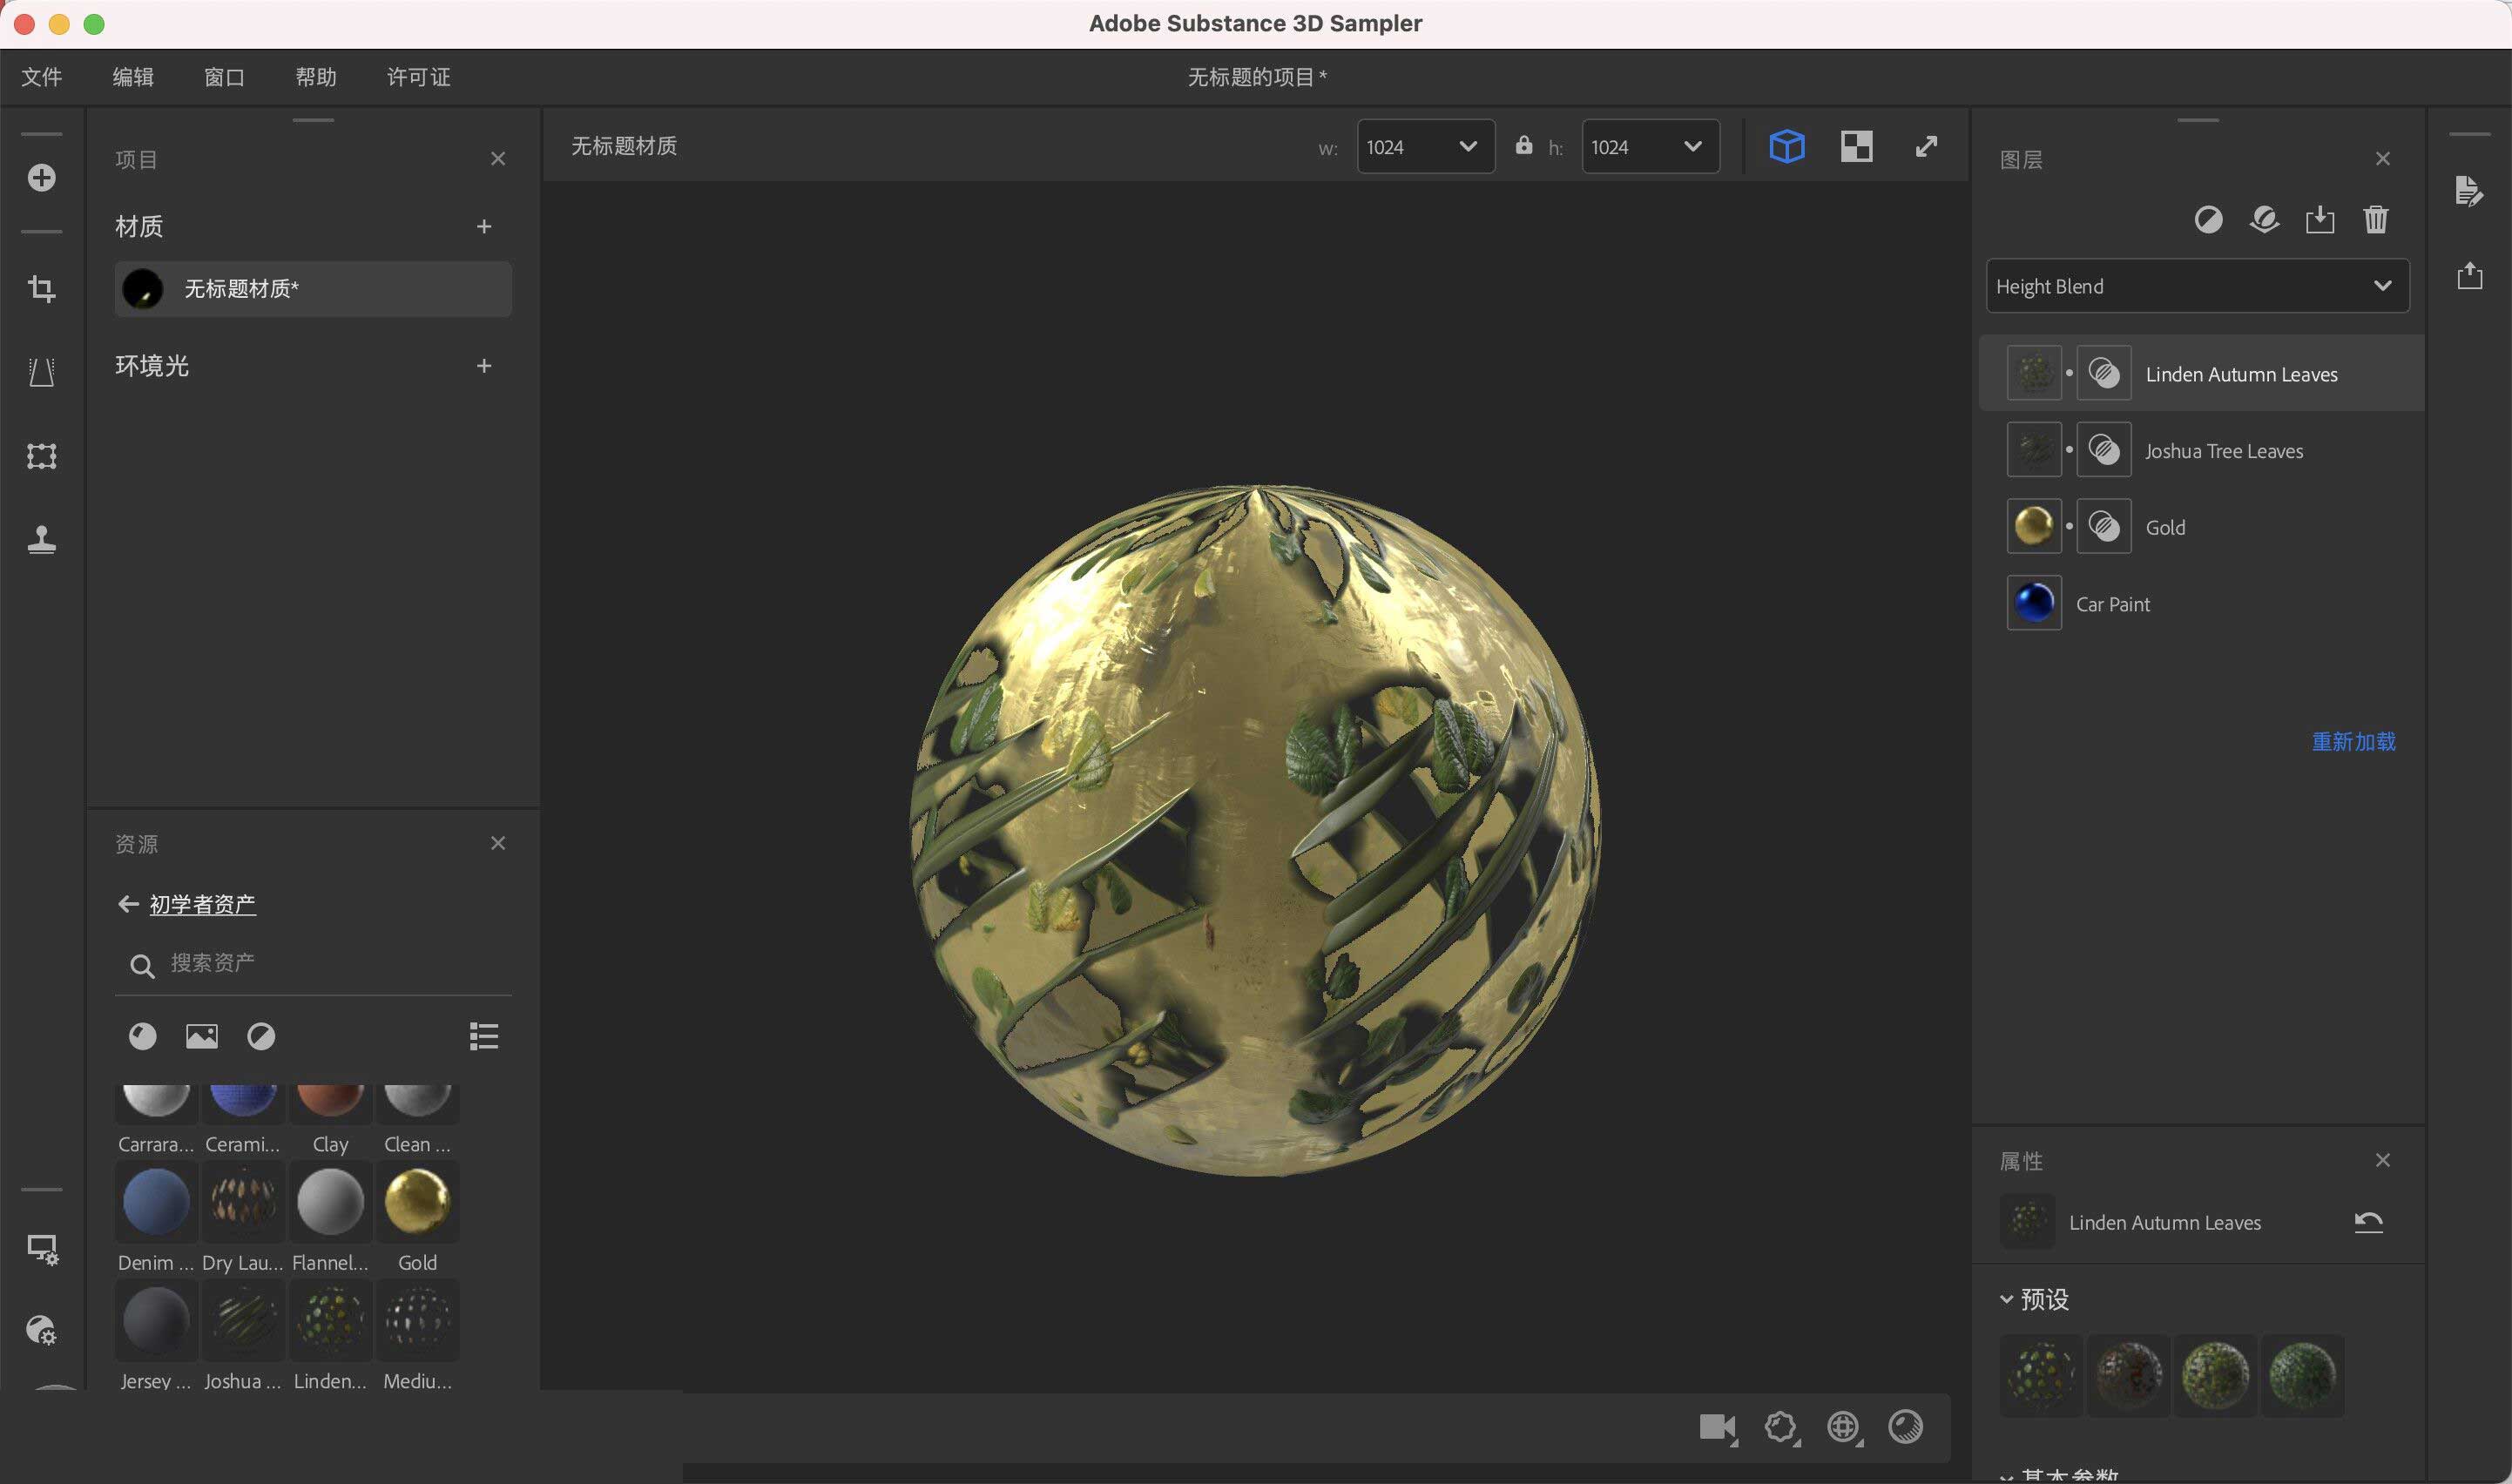 Adobe Substance 3D Sampler 4.1.2.3298 for ipod instal